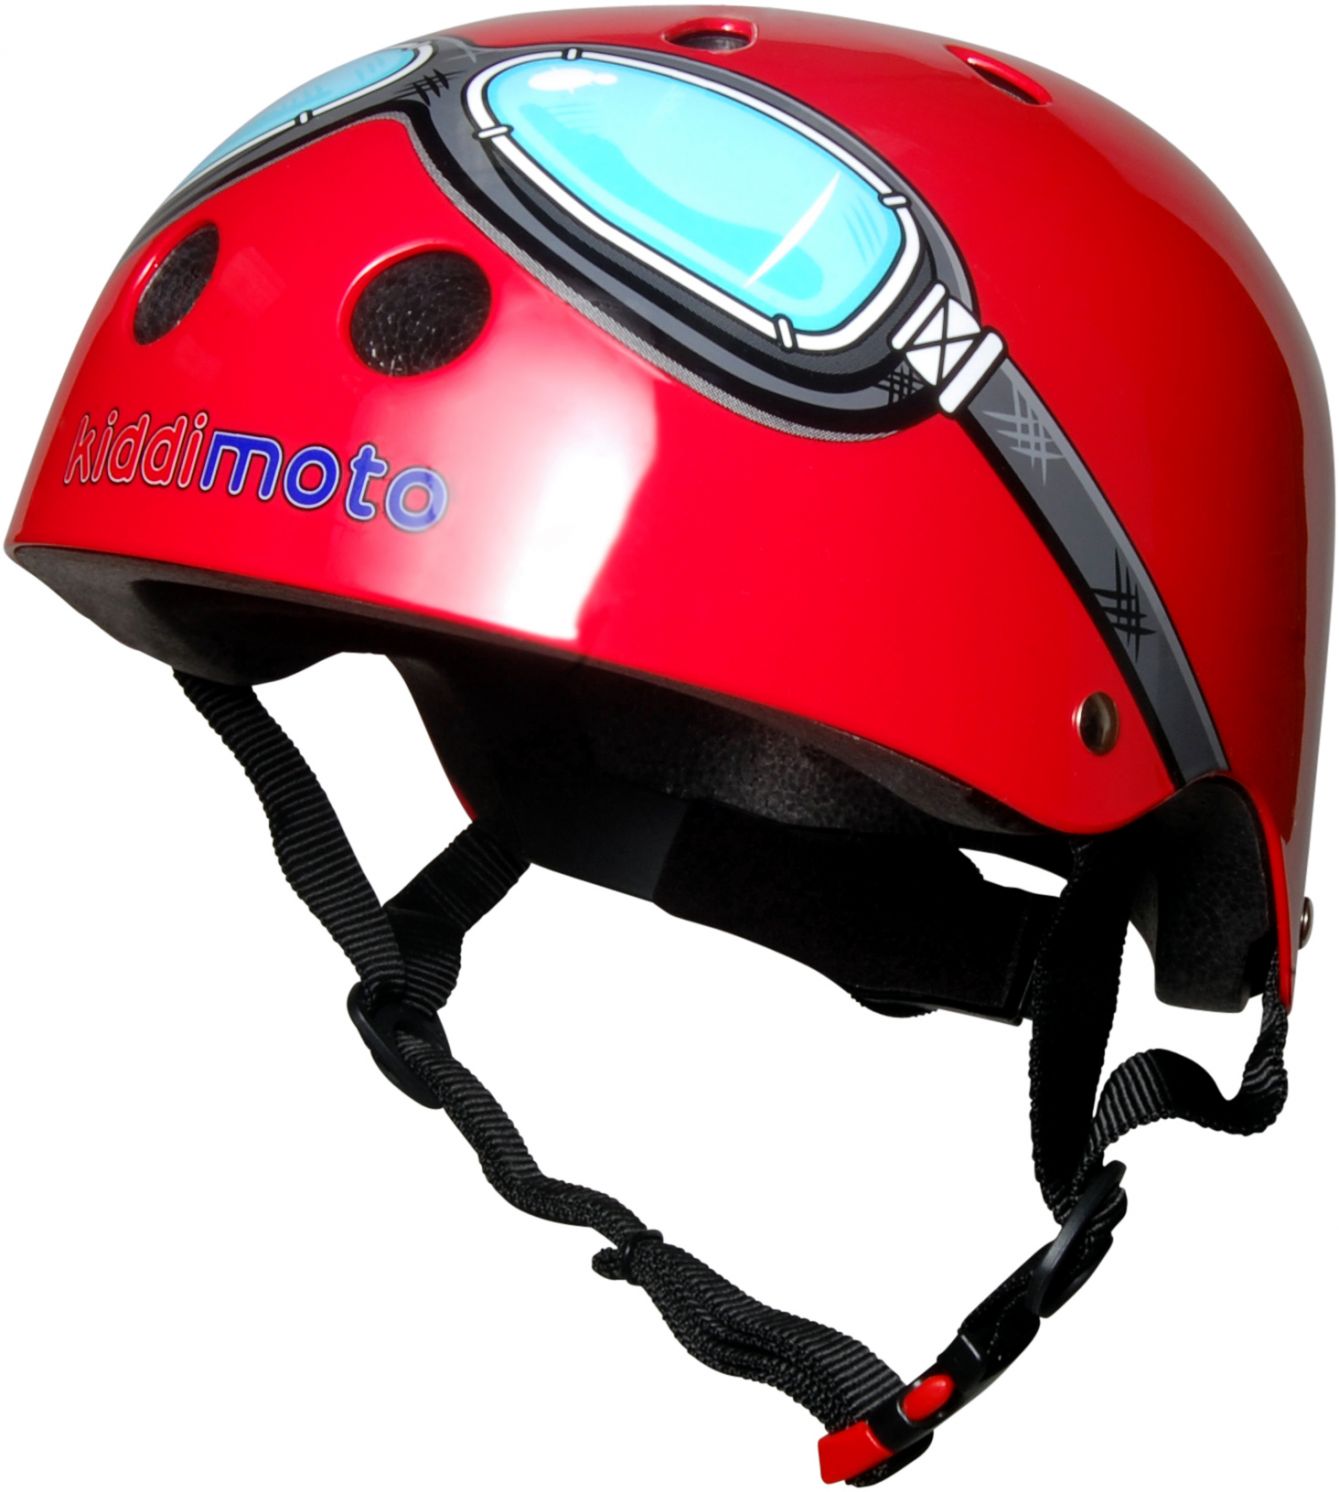 Шлем детский Kiddimoto очки пилота, красный, размер M 53-58см фото 